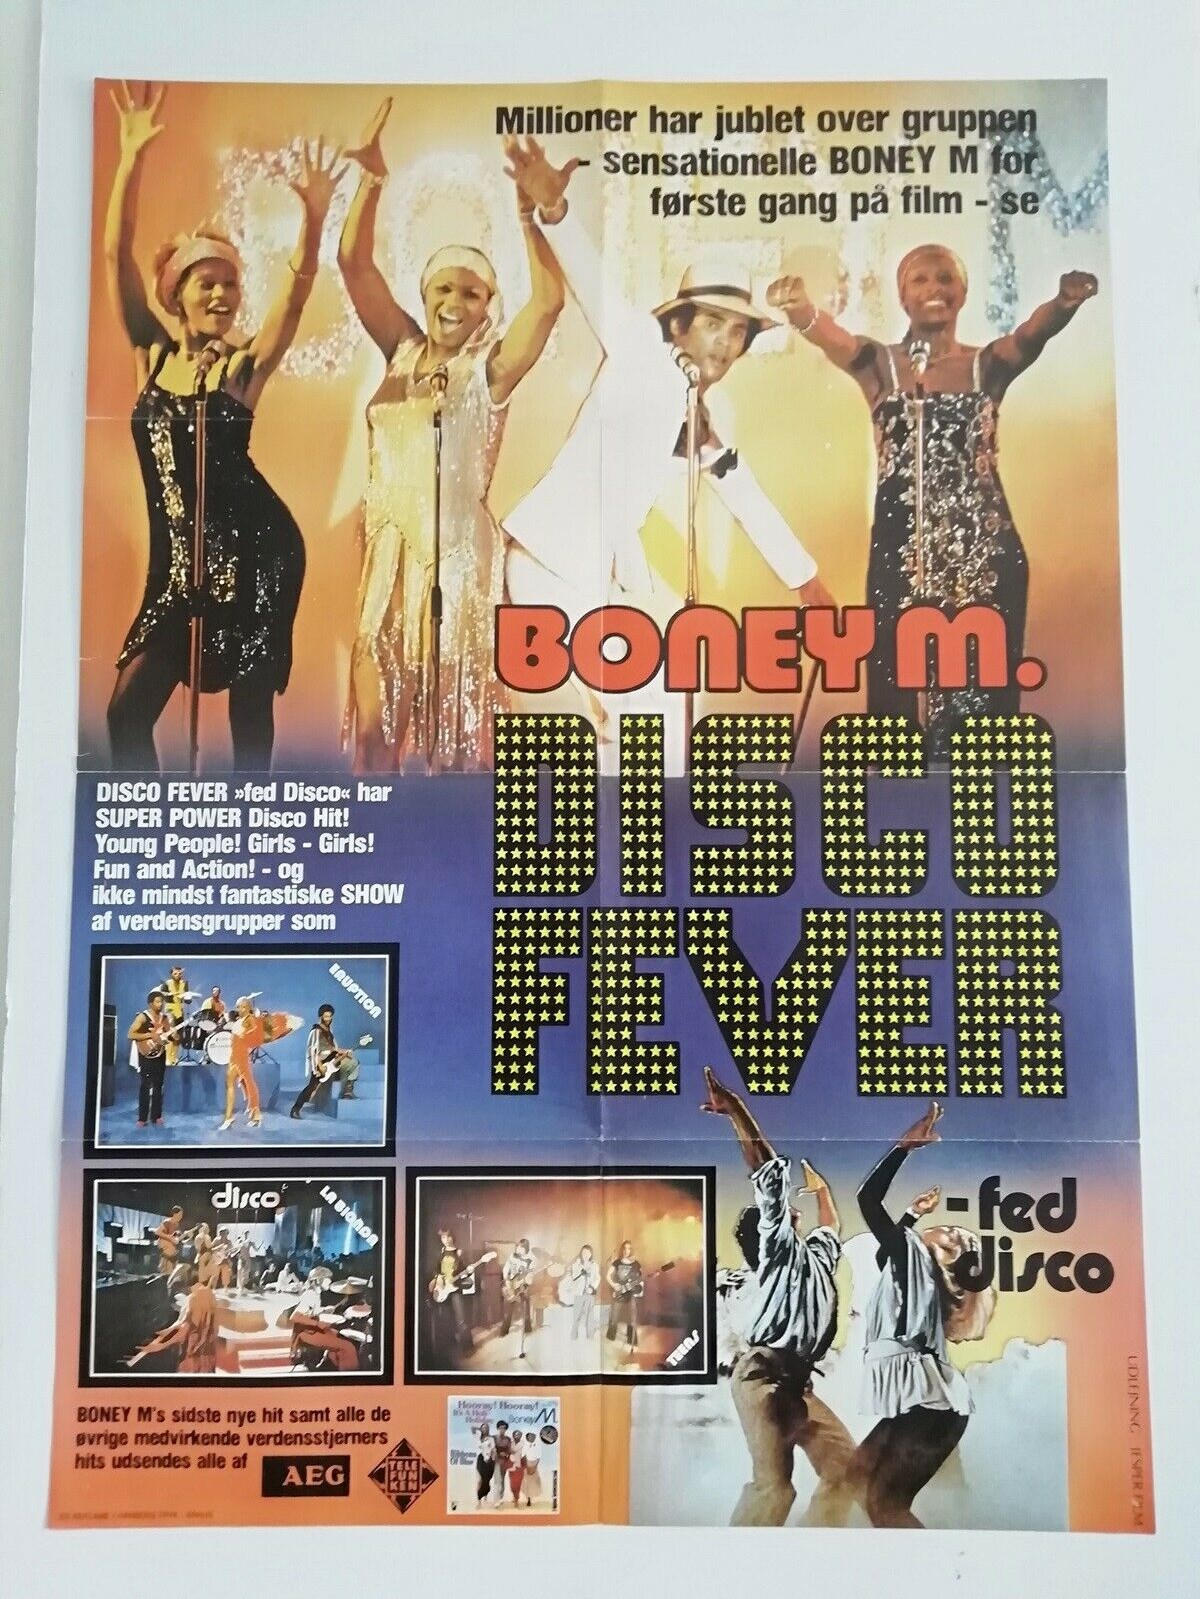 Du skal til Maribo, hvis du vil hente denne plakat med Boney M., men den kan også sendes til din adresse, hvis du betaler fragten. Lige nu er den til salg på DBA